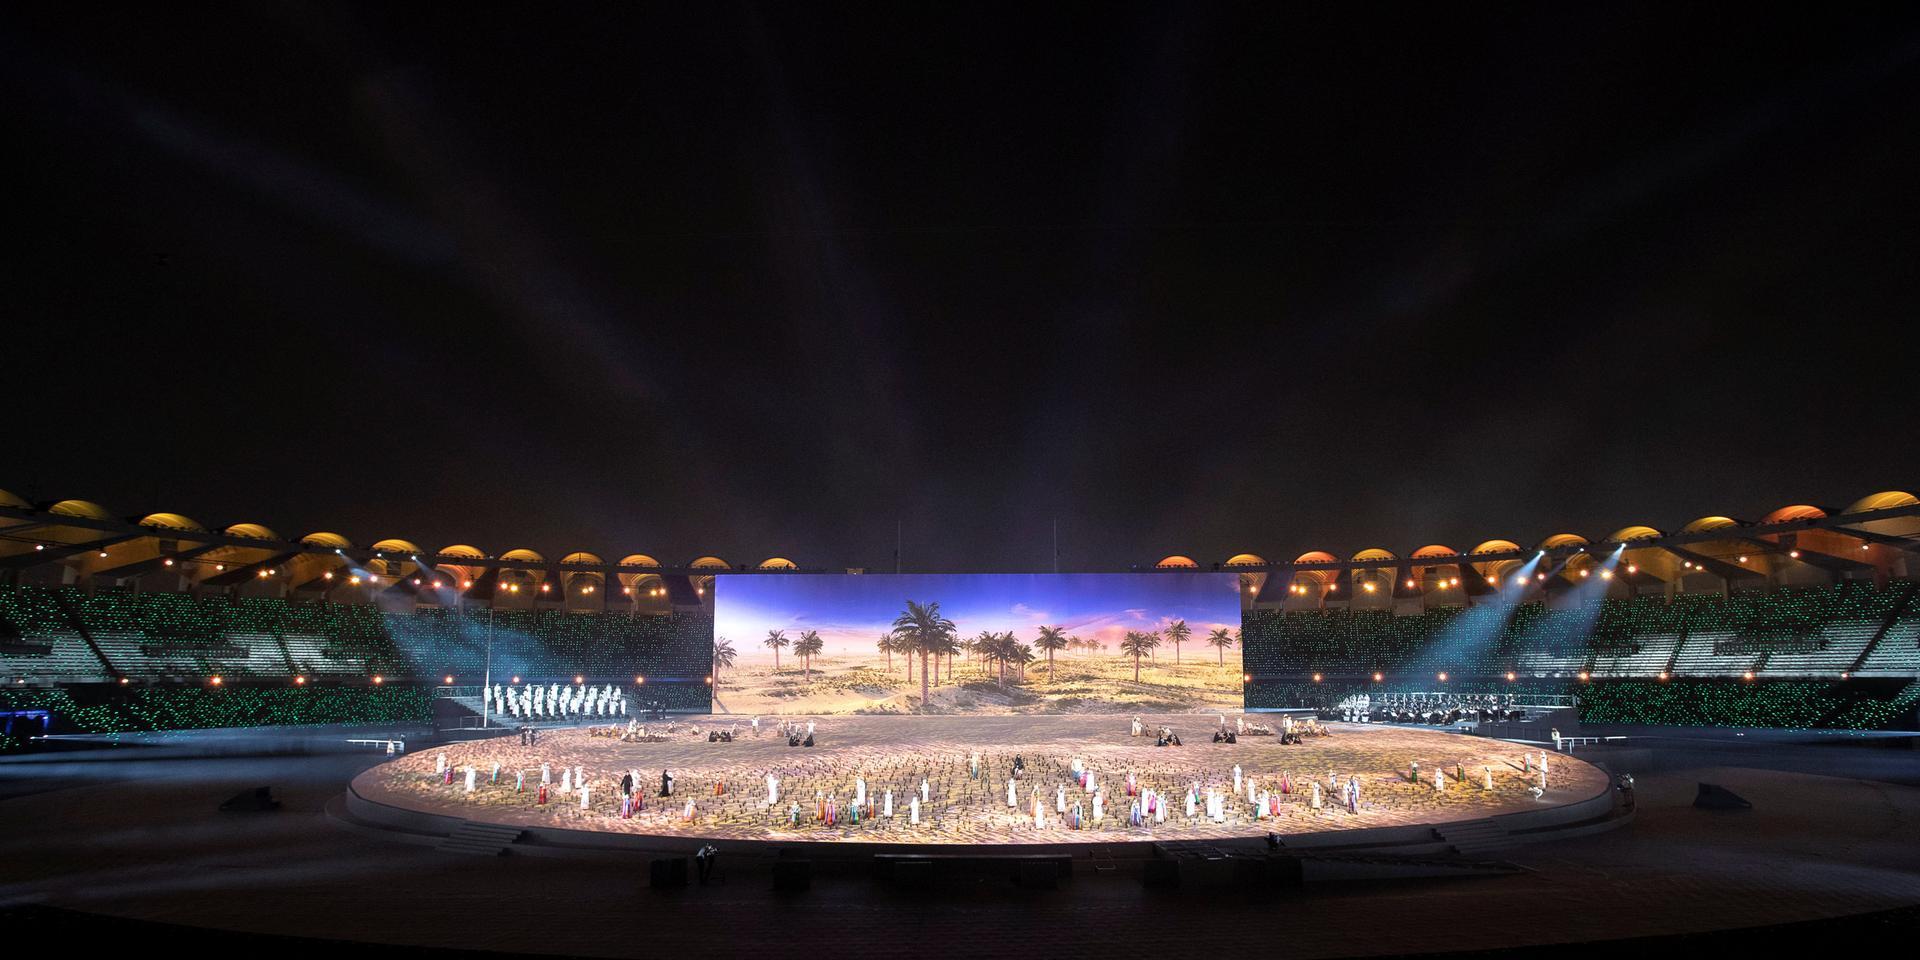 أجمل الصور الملتقطة خلال إحتفالات اليوم الوطني الإماراتي ال 47